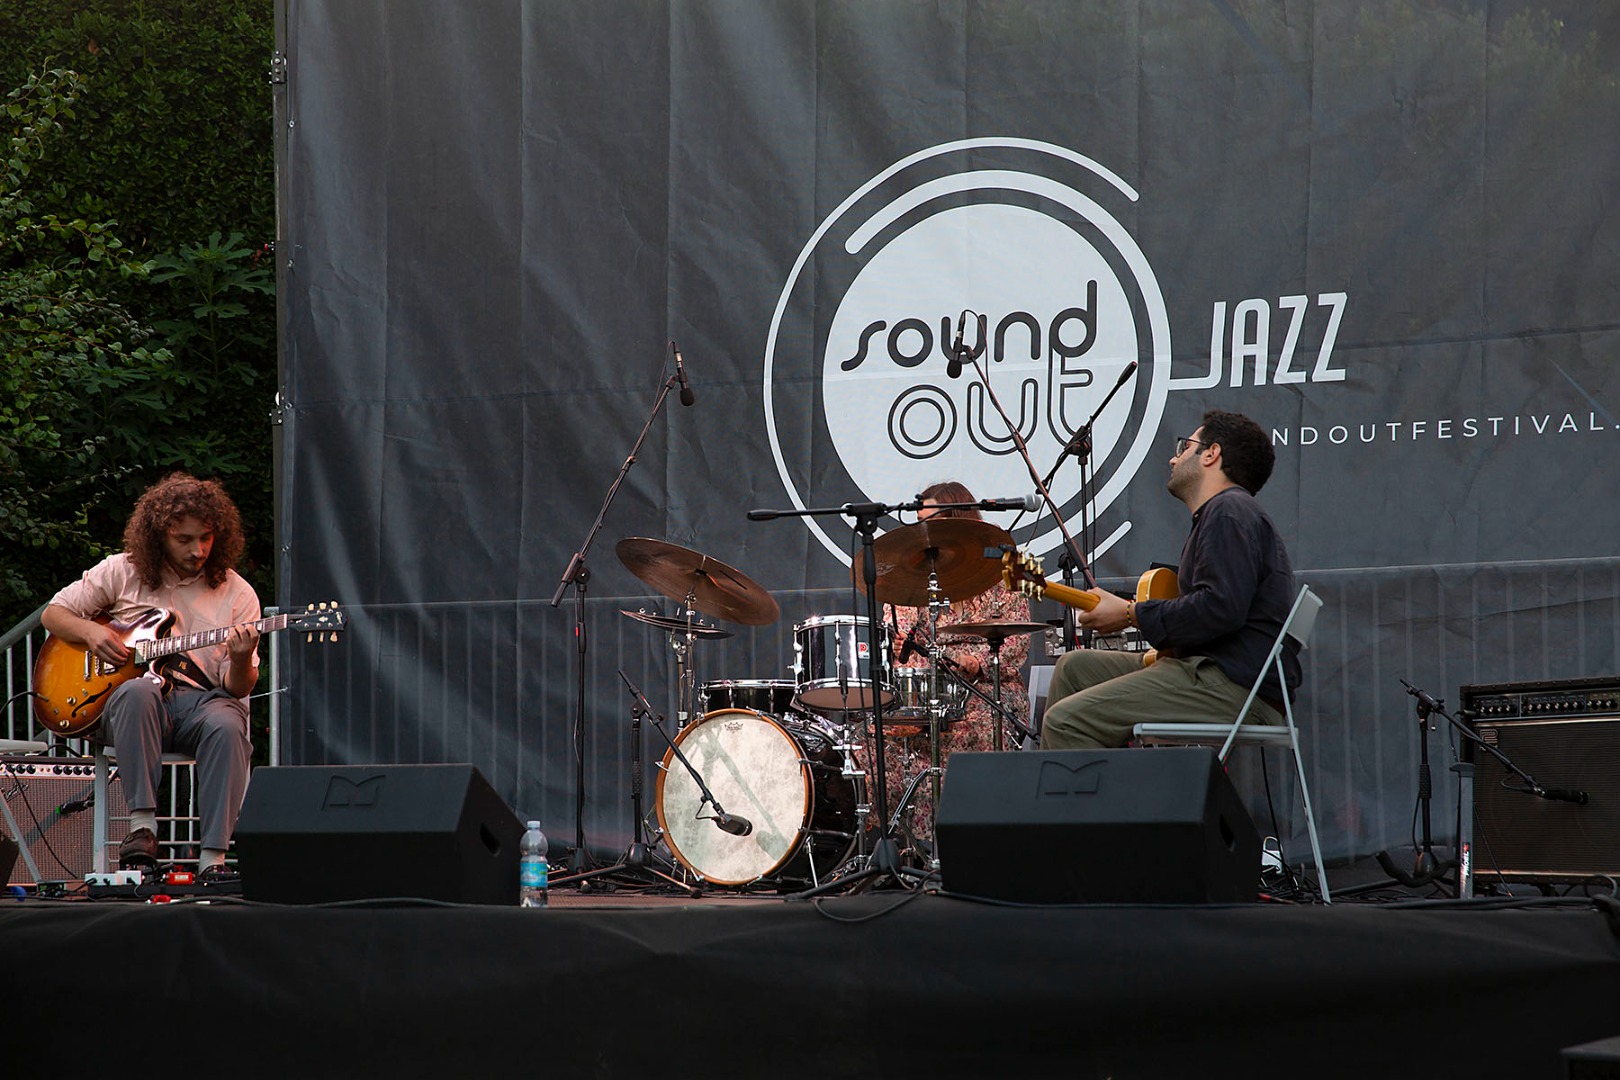 SoundOut Jazz Festival 2022